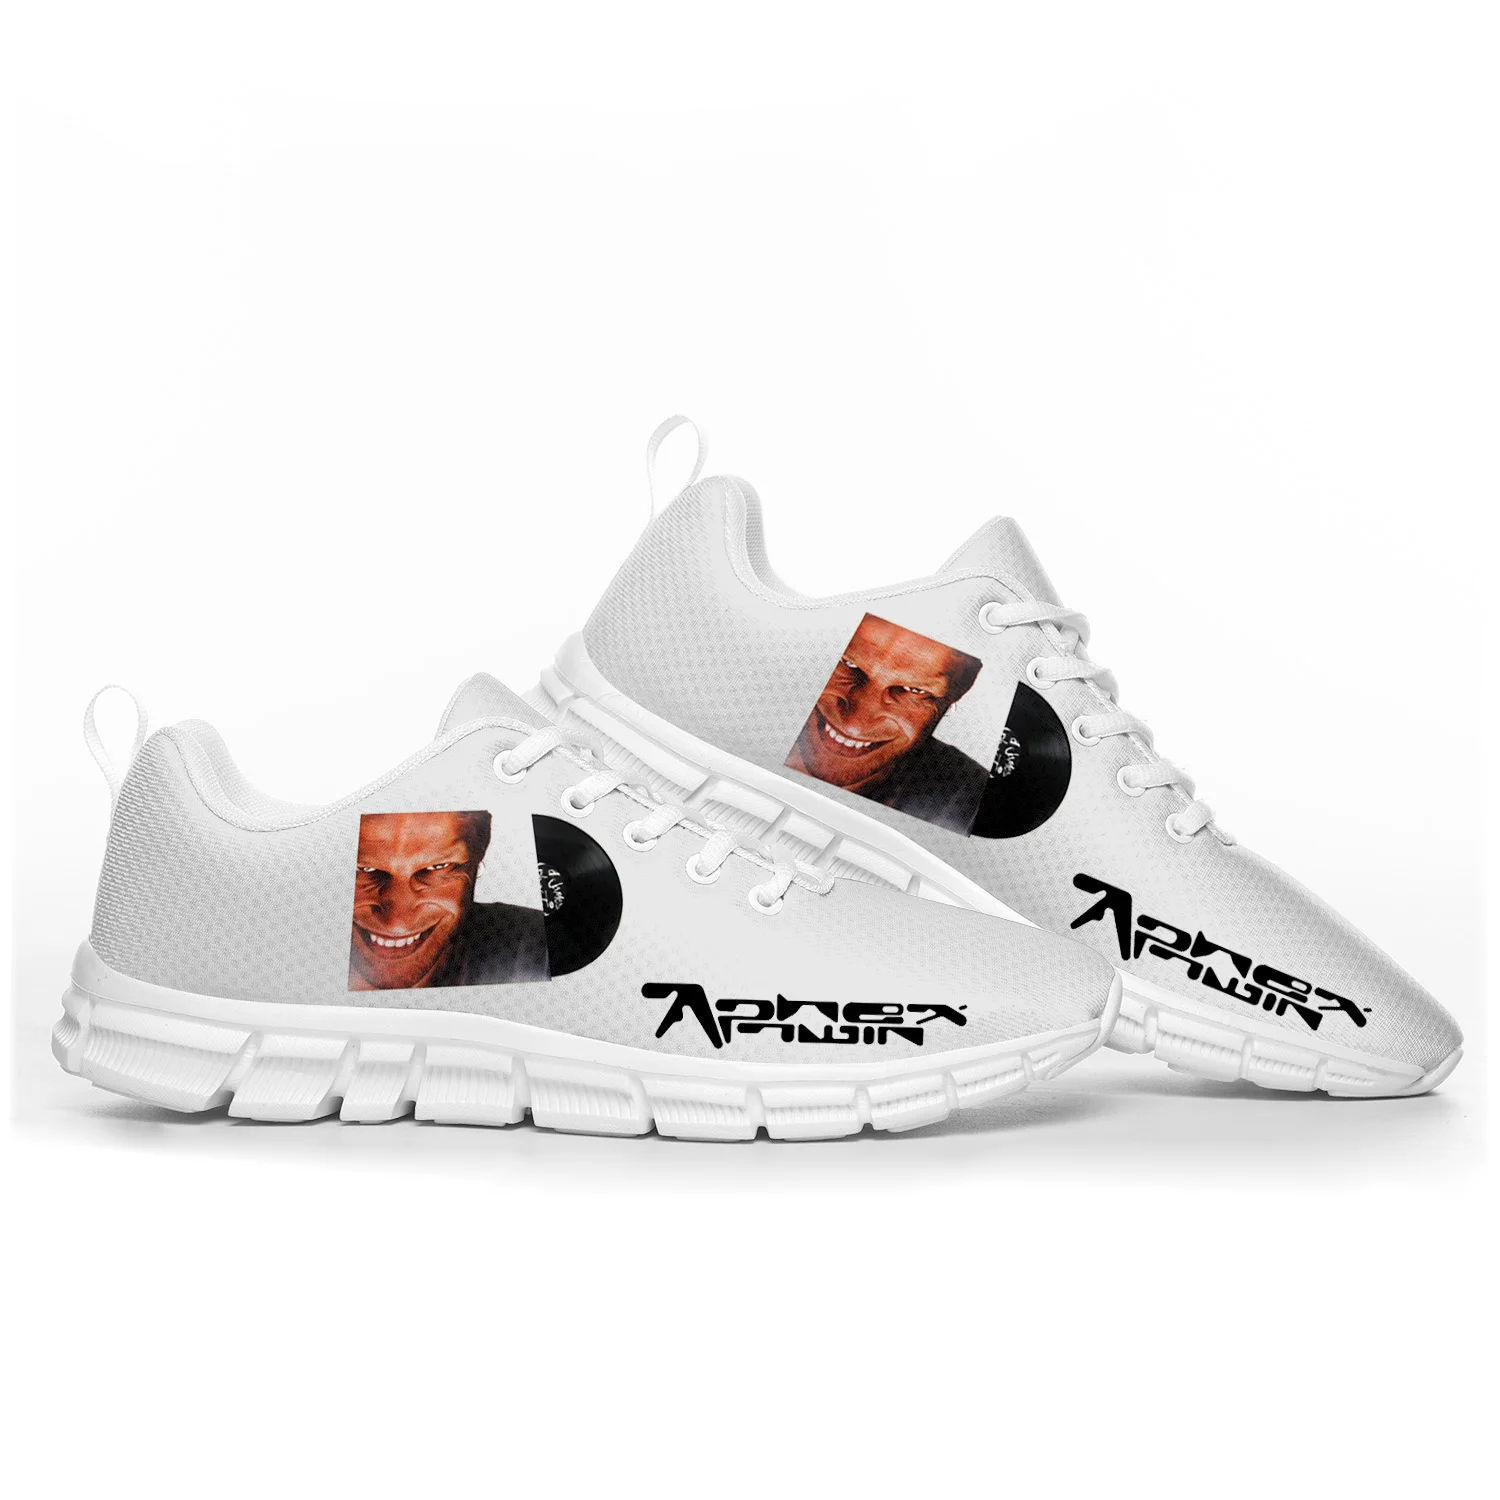 

Aphex Двойная электронная музыкальная DJ микшер спортивная обувь для мужчин женщин подростков детей детские кроссовки под заказ Высокое качество обувь для пары